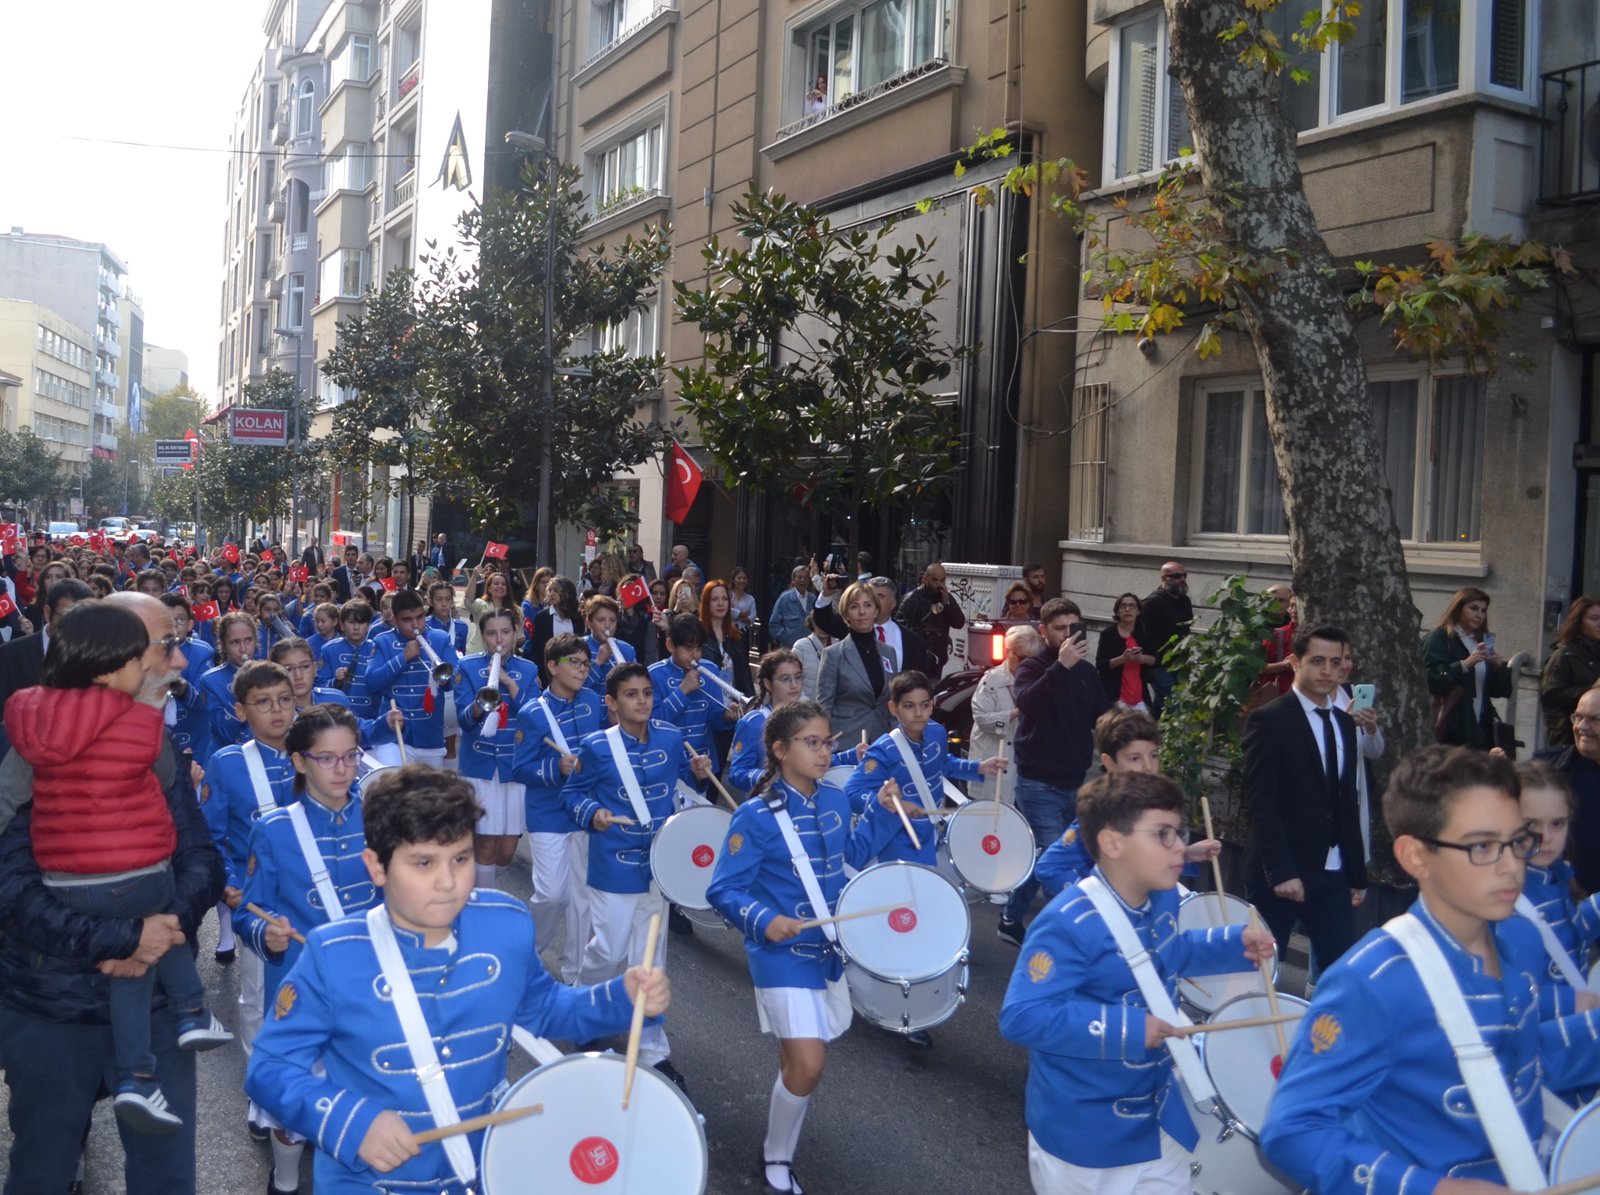 FMV Işık Okulları, Cumhuriyet’in 96. yılını bando yürüyüşü ile kutladı